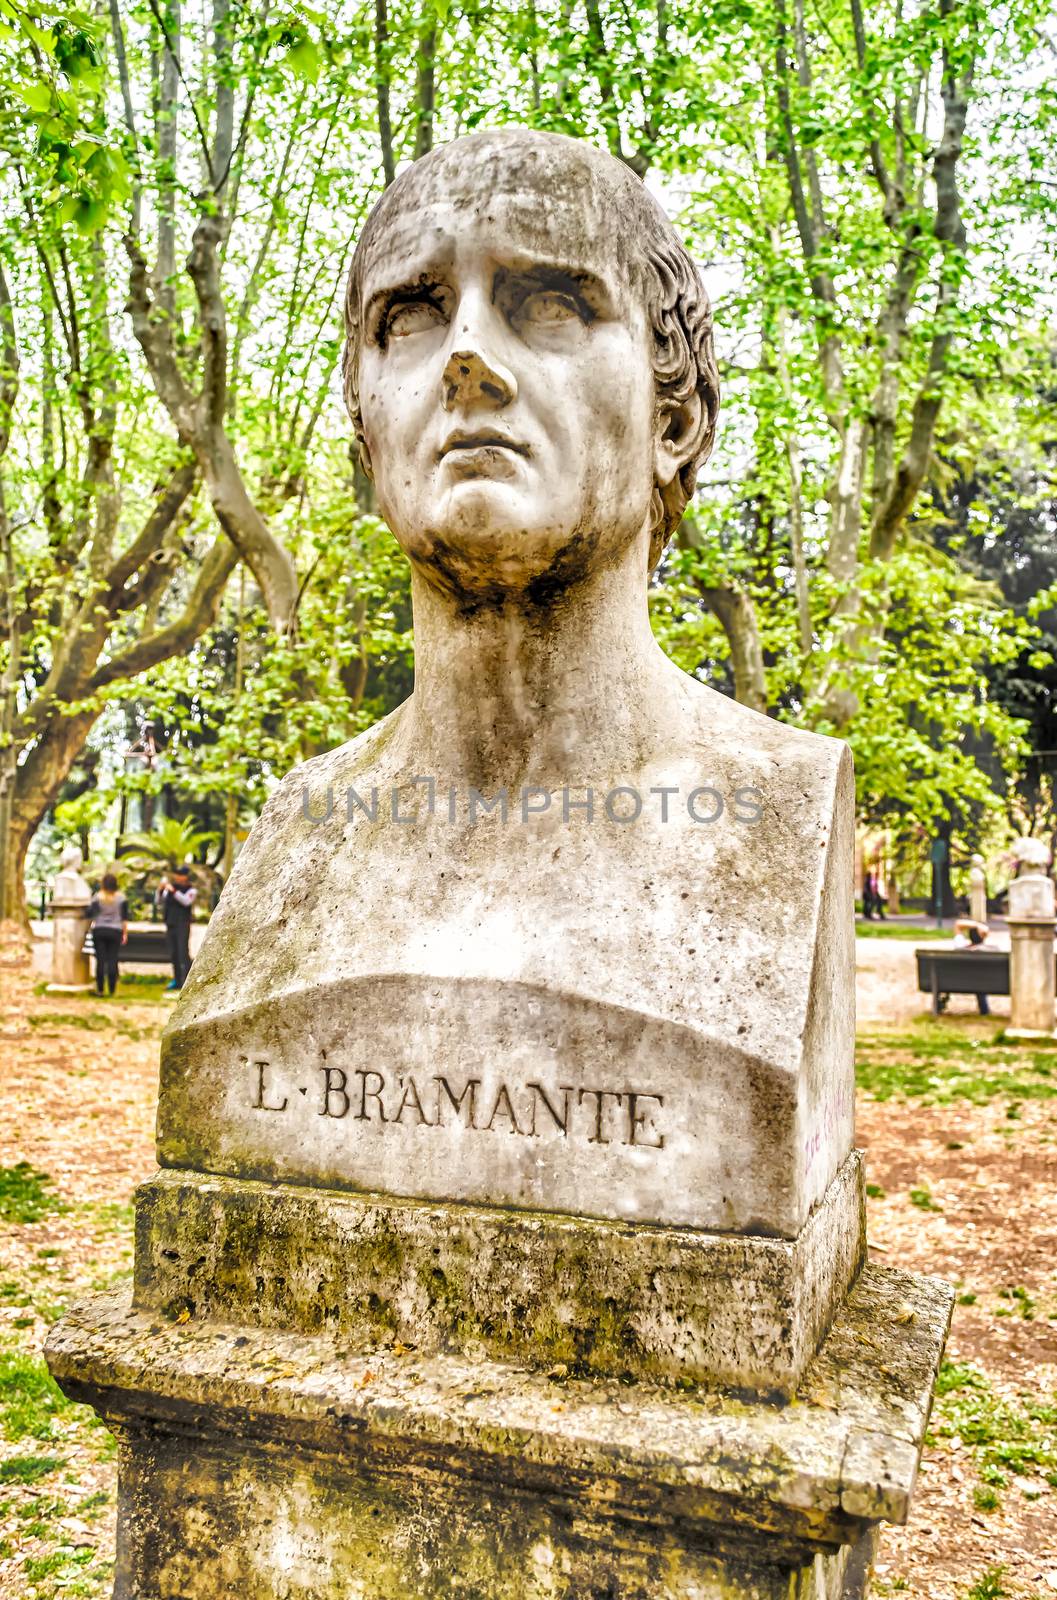 Bust statue of Bramante. Sculpture in Villa Borghese park, Rome by marcorubino